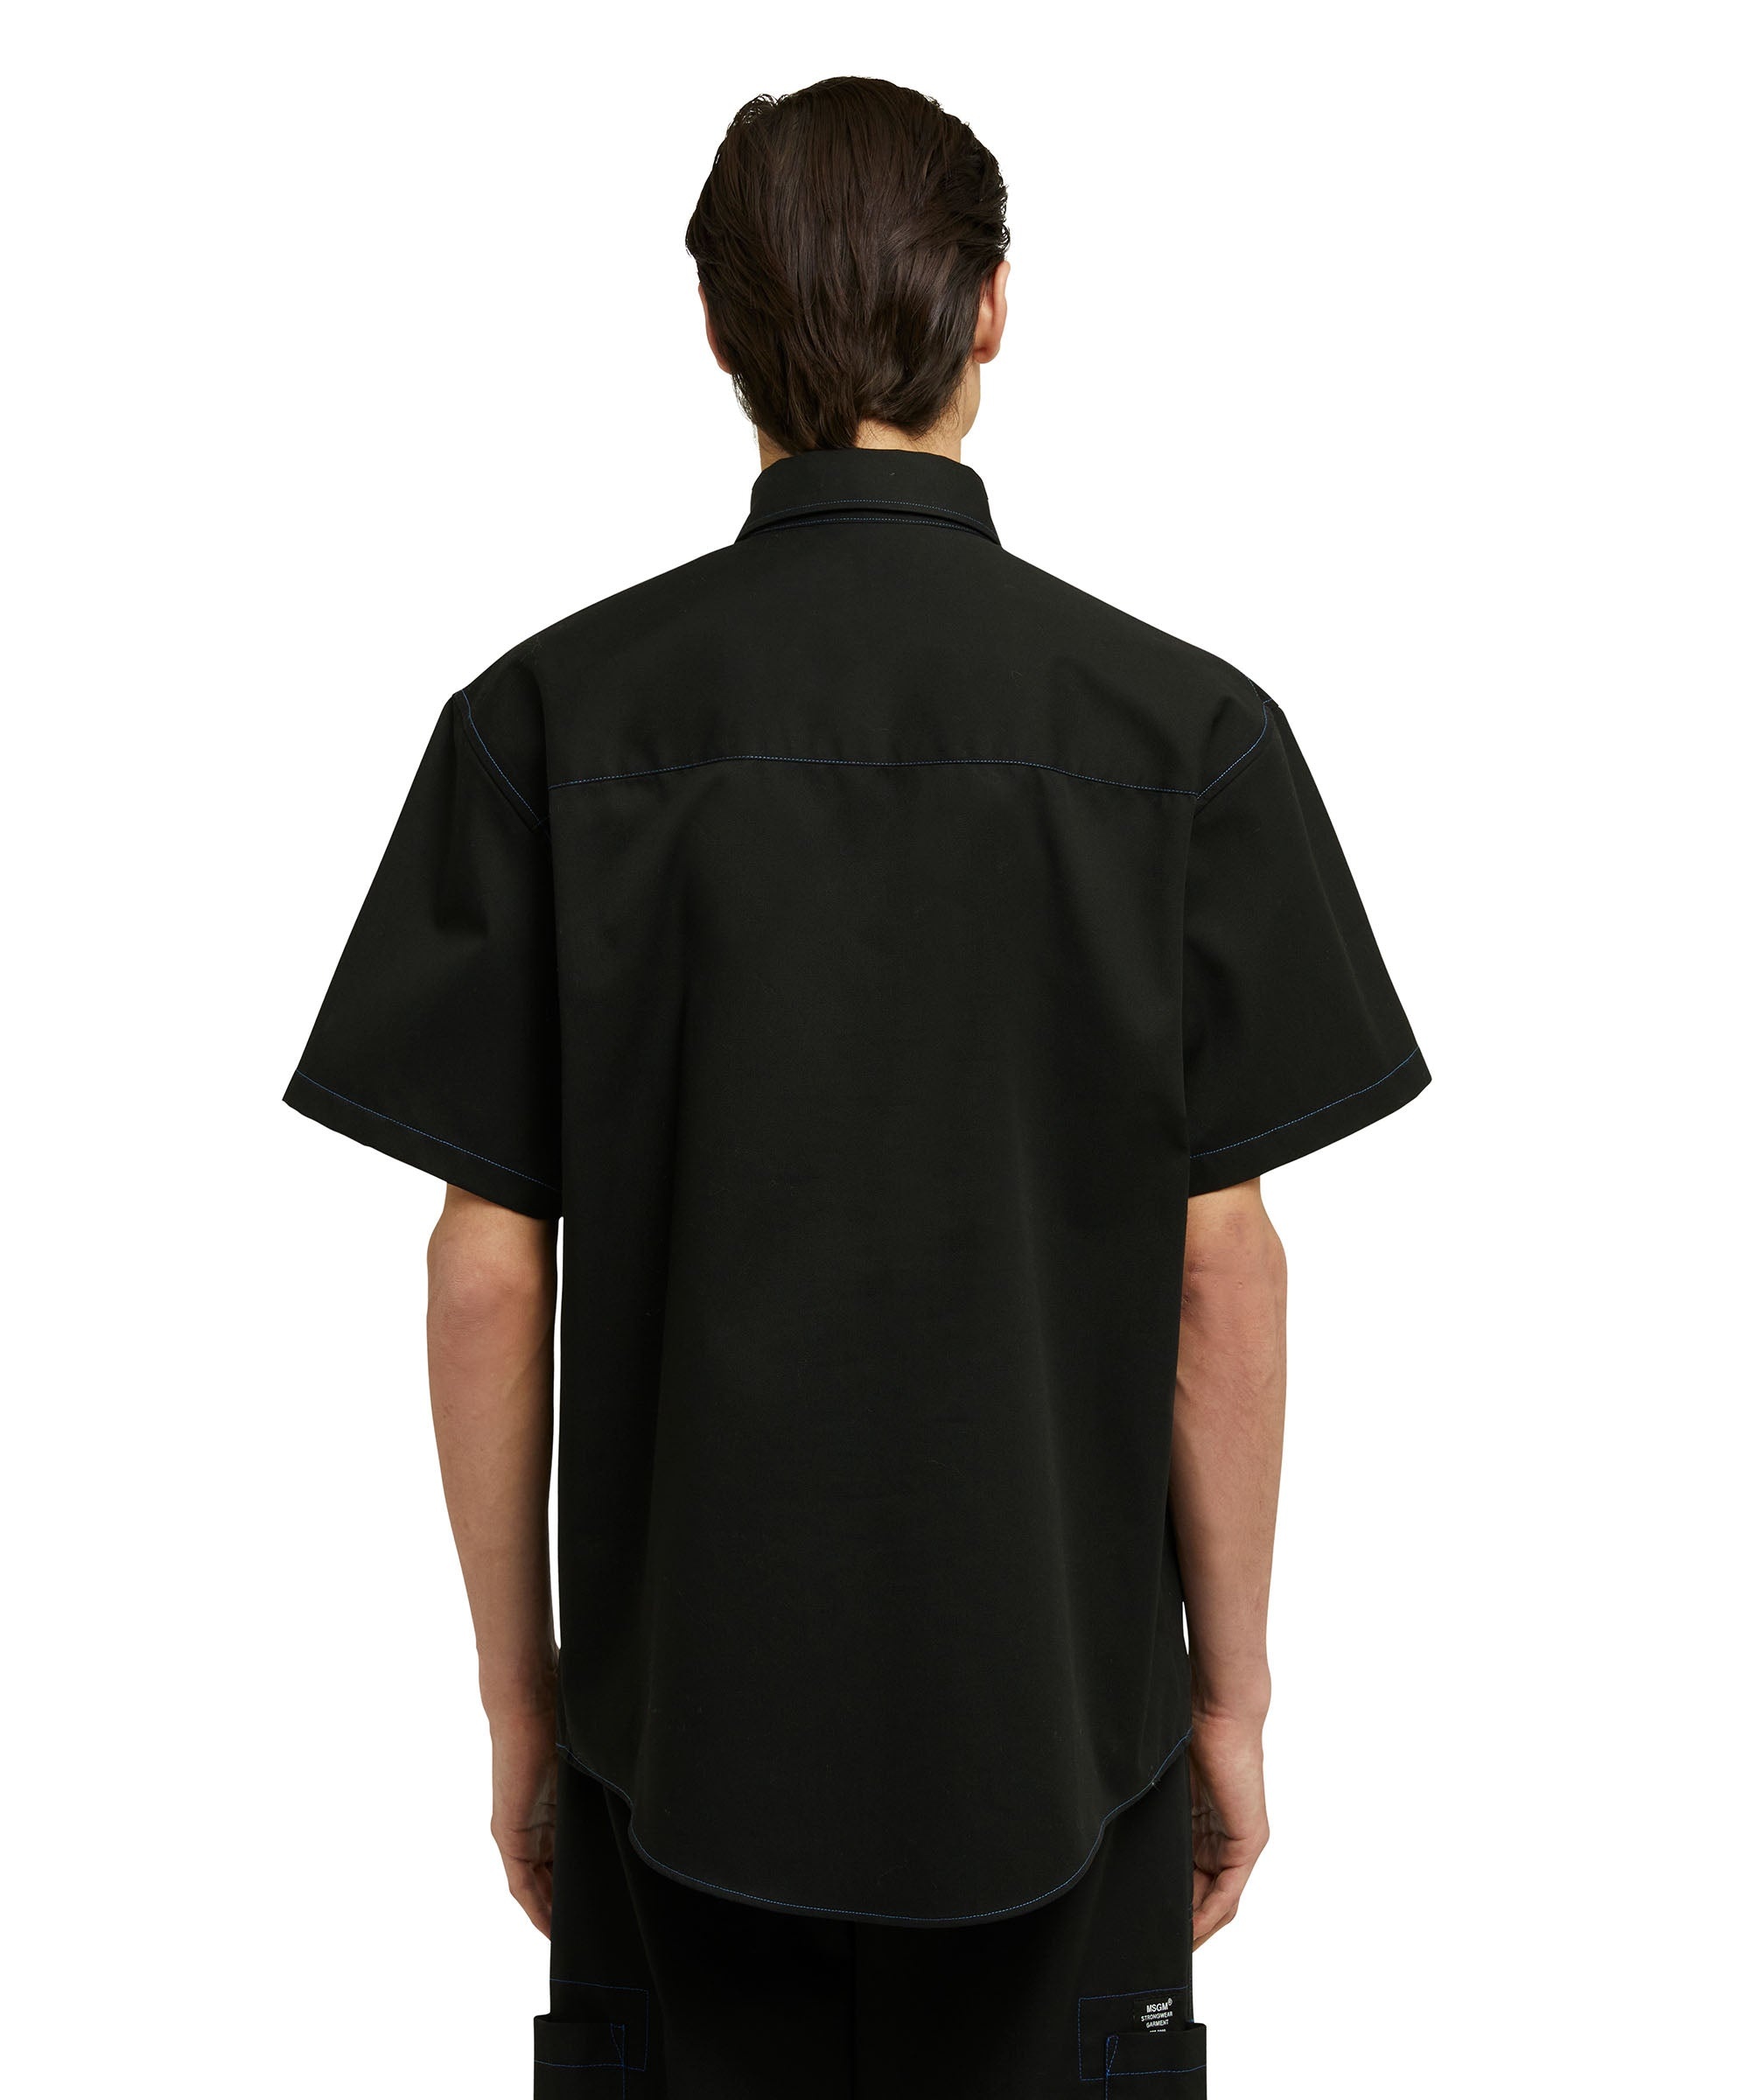 Mixed cotton "Technical Gabardine" shirt - 3